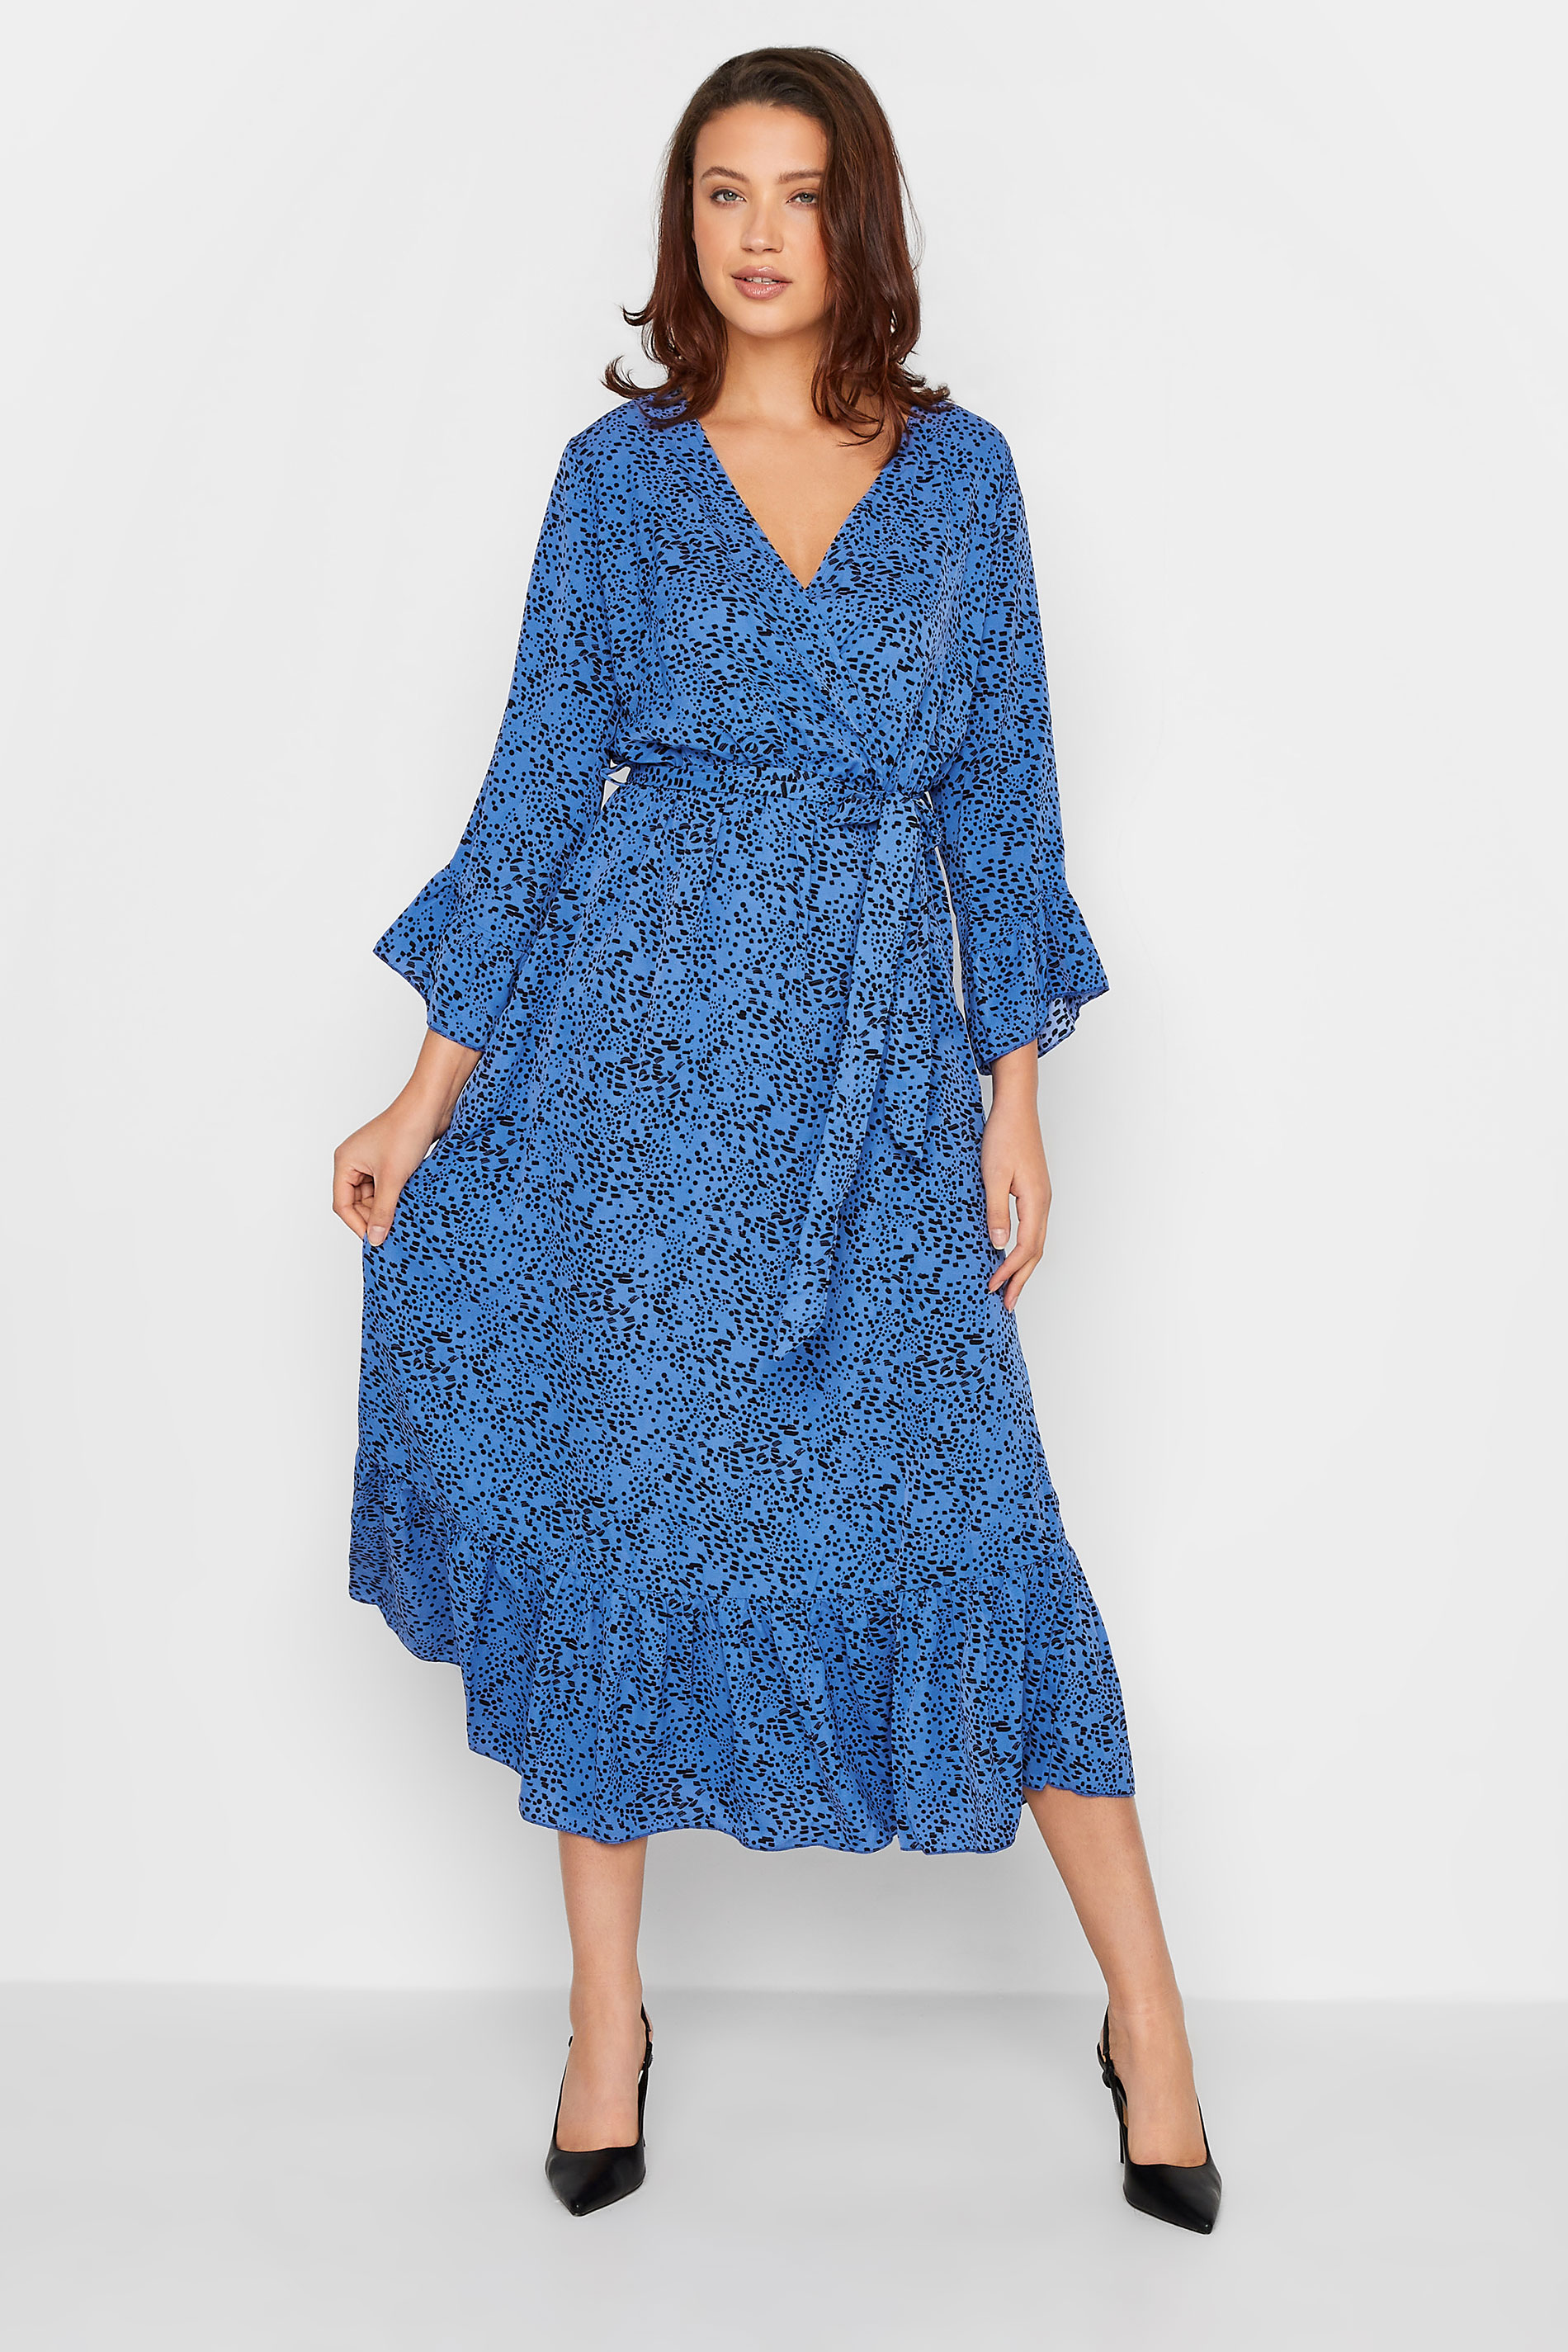 LTS Tall Women's Cobalt Blue Dalmatian Print Wrap Dress | Long Tall Sally 1